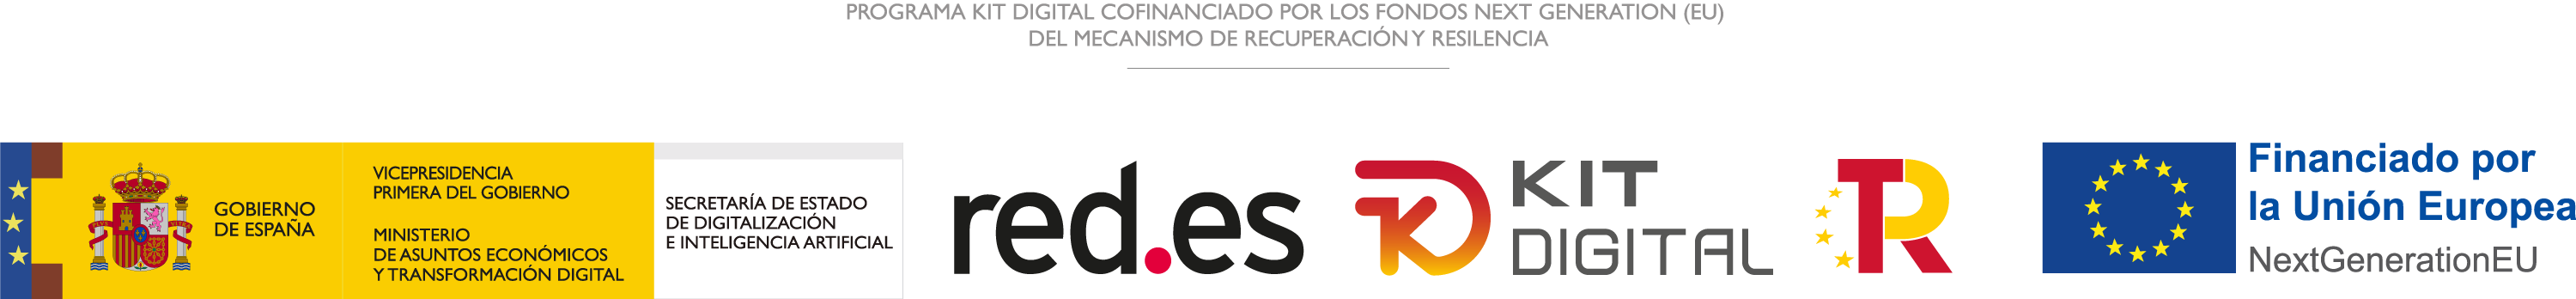 Logo digitalizadores Kit Digital red.es Martín Cerro Agente Digital soluciones digitales para el kit digital.